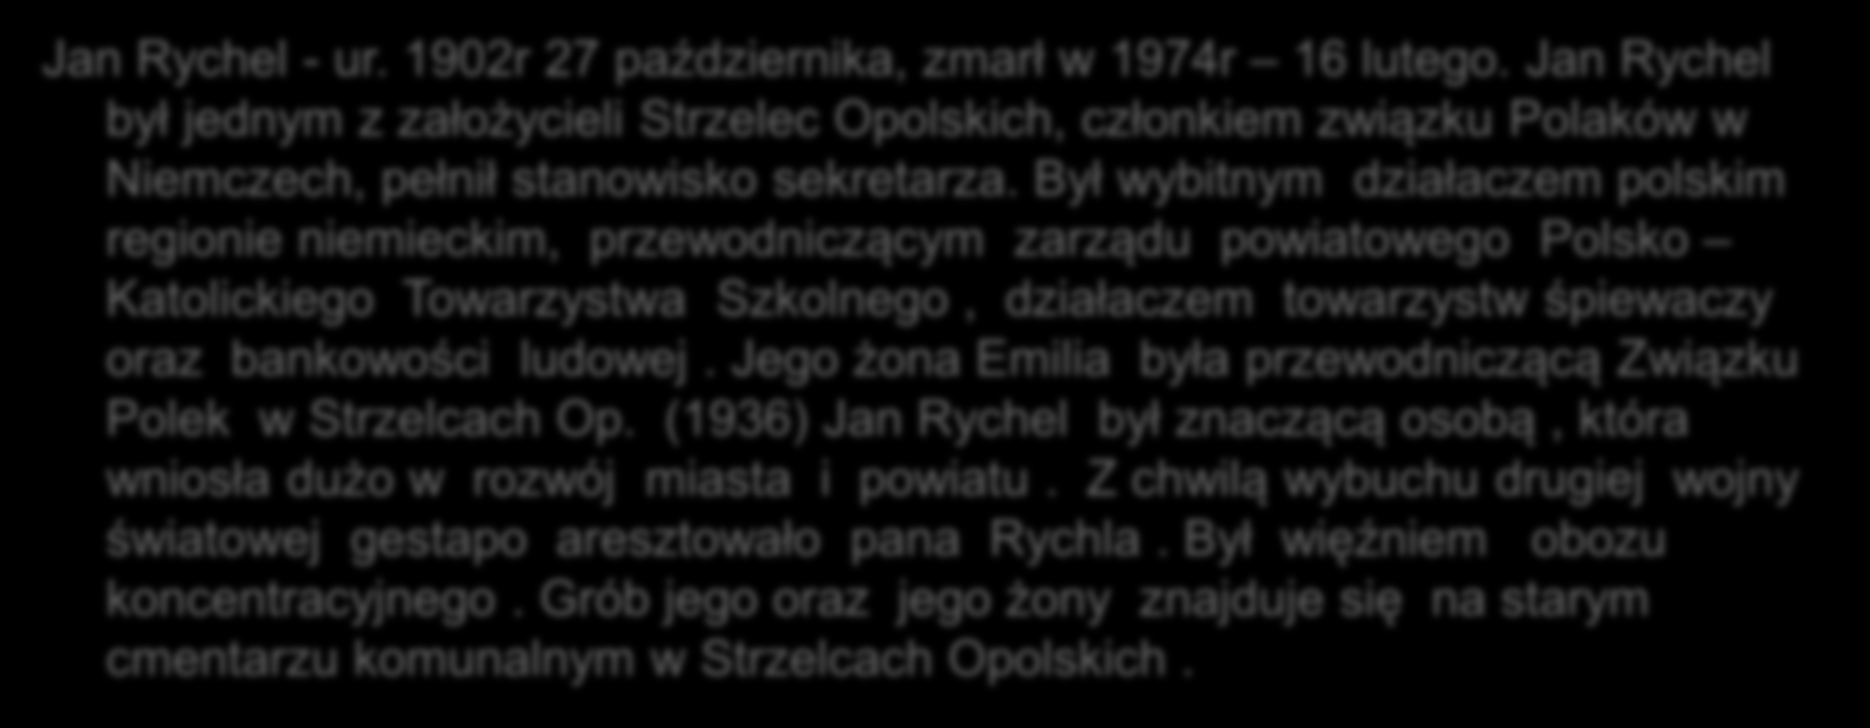 Jan Rychel - ur. 1902r 27 października, zmarł w 1974r 16 lutego. Jan Rychel był jednym z założycieli Strzelec Opolskich, członkiem związku Polaków w Niemczech, pełnił stanowisko sekretarza.